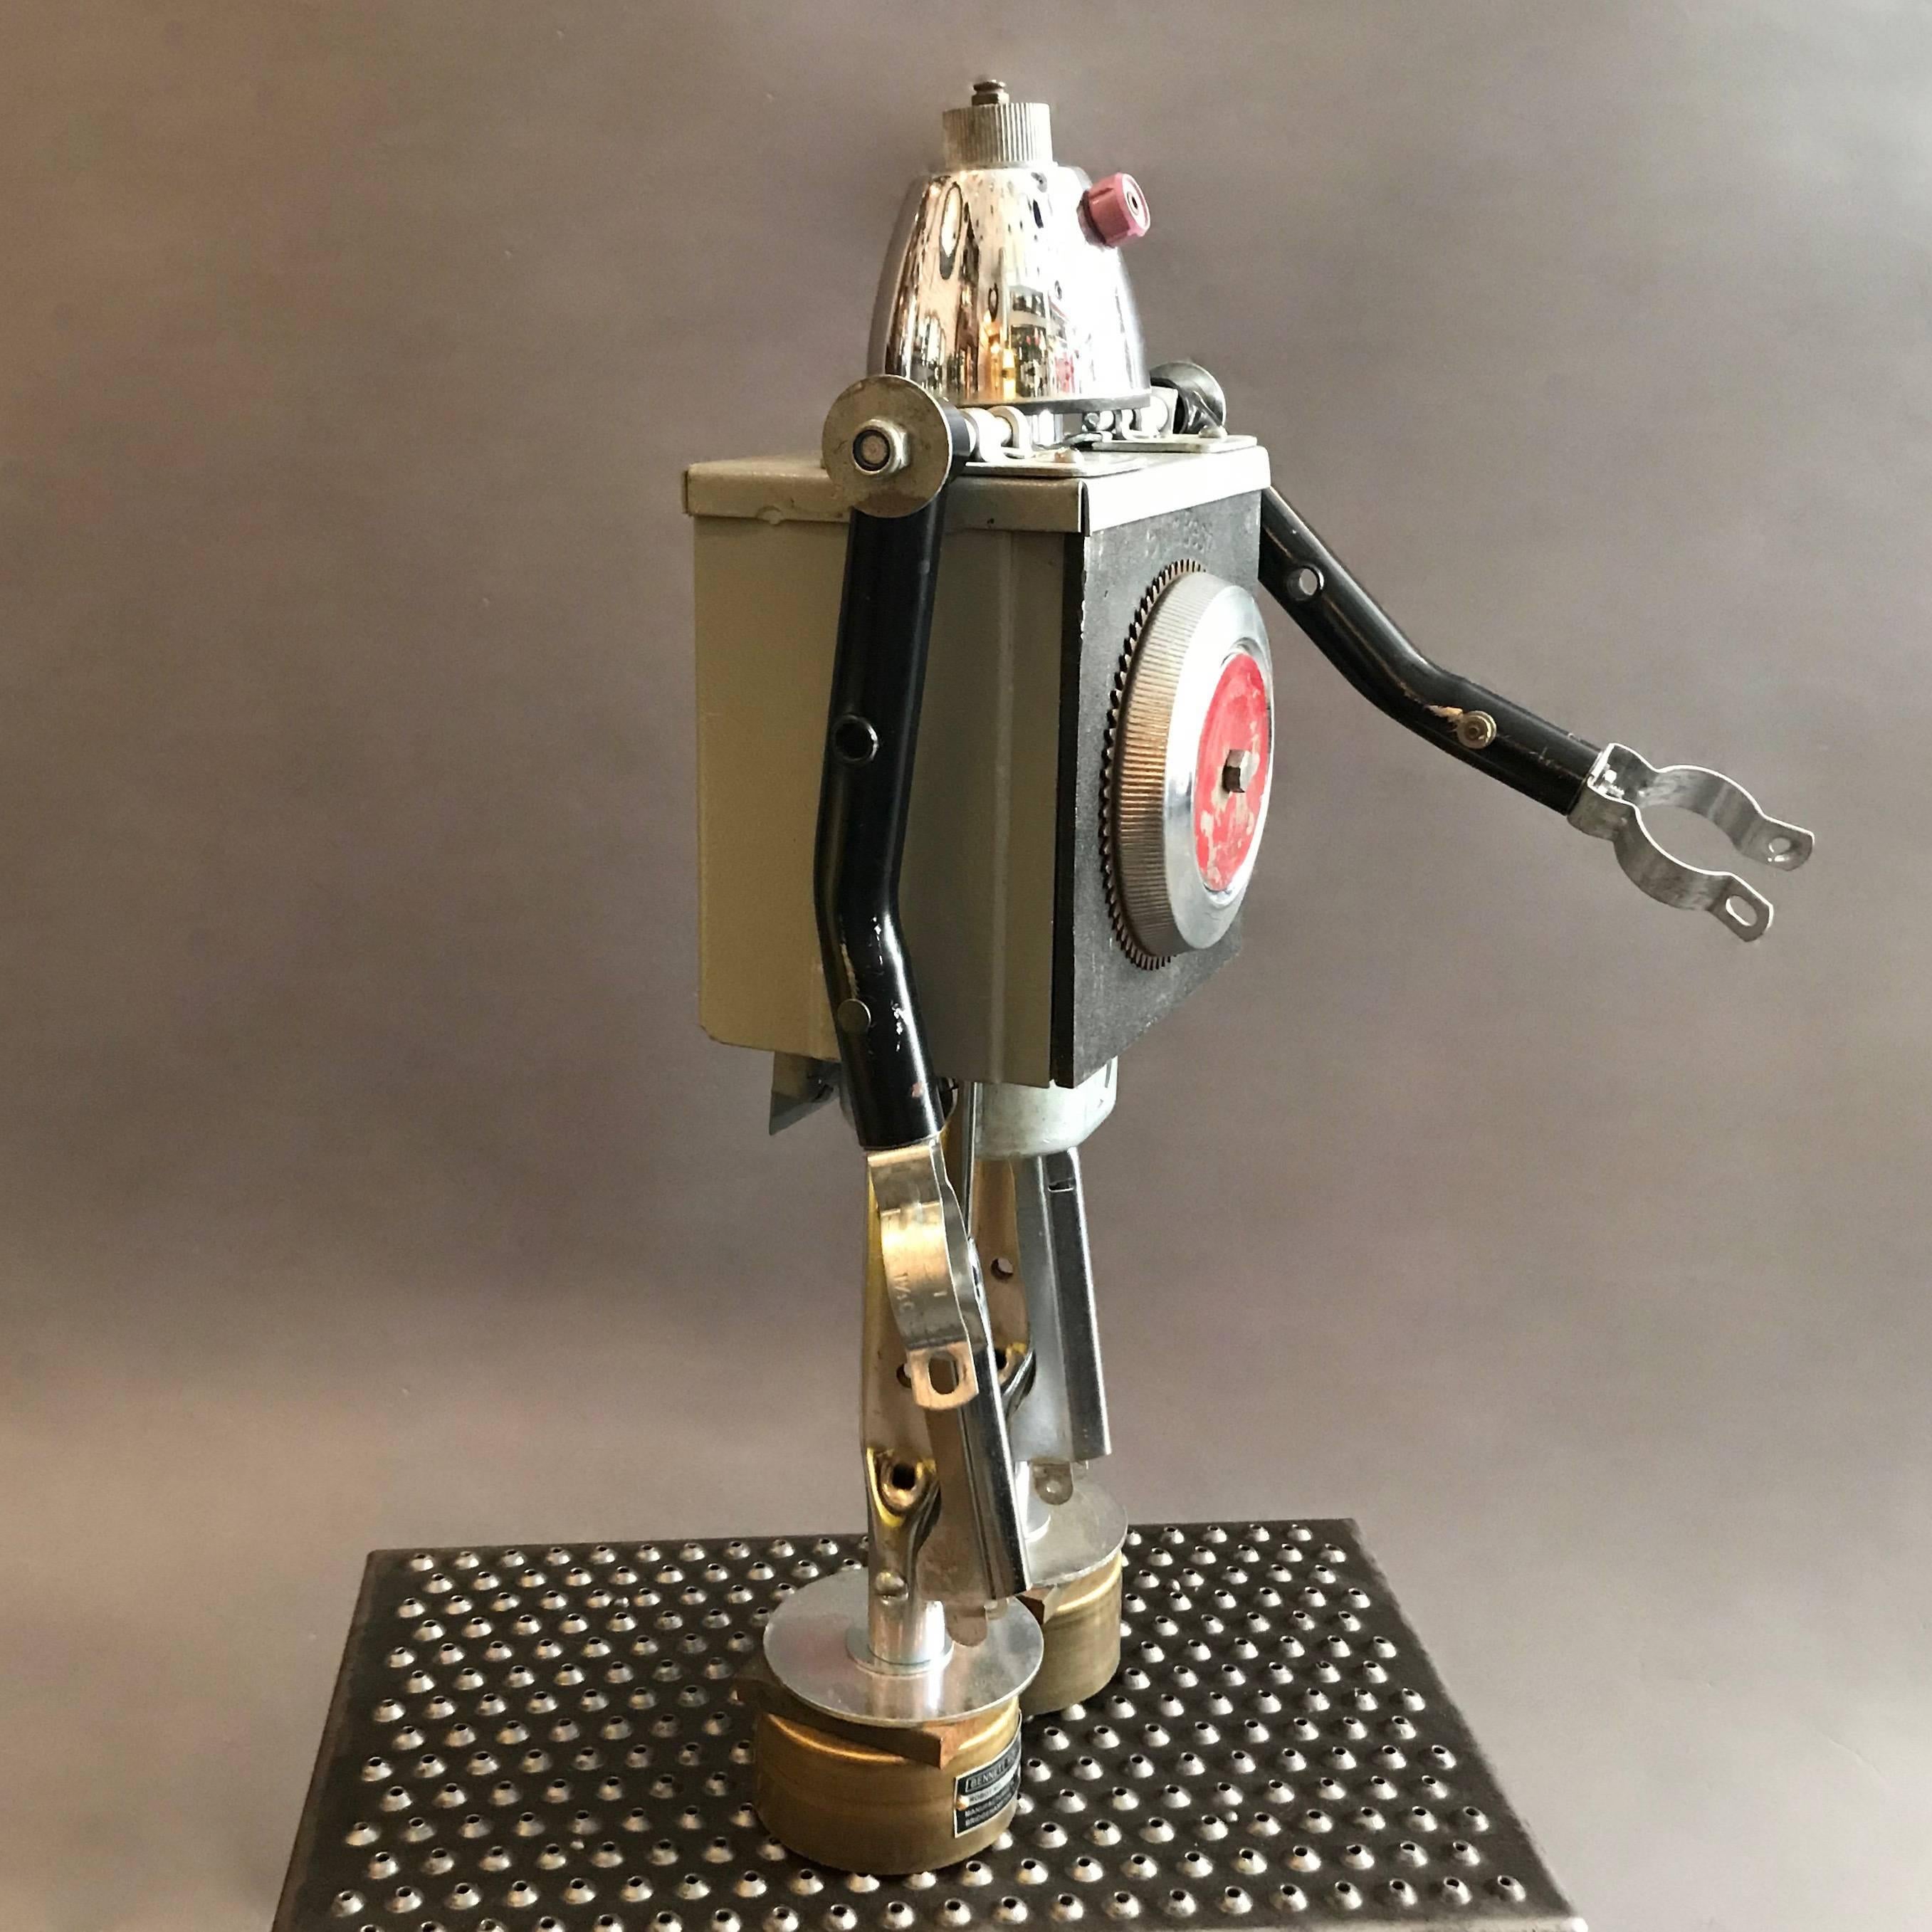 American Plumbest Robot Sculpture by Bennett Robot Works